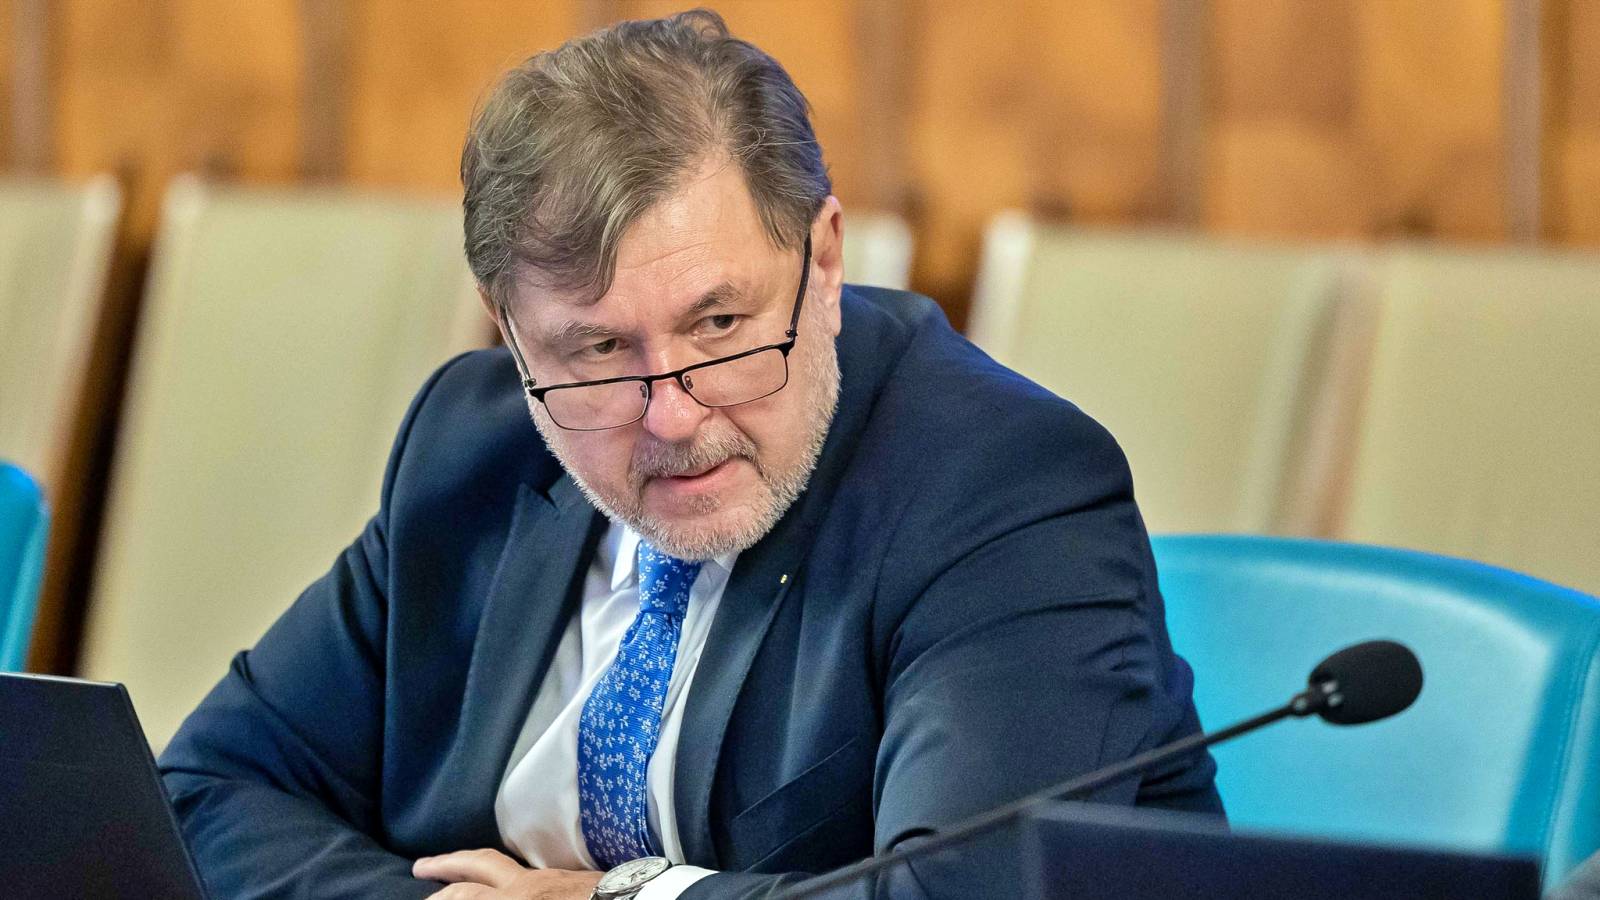 Der Gesundheitsminister richtet eine äußerst ernste WARNUNG an alle Rumänen im Land